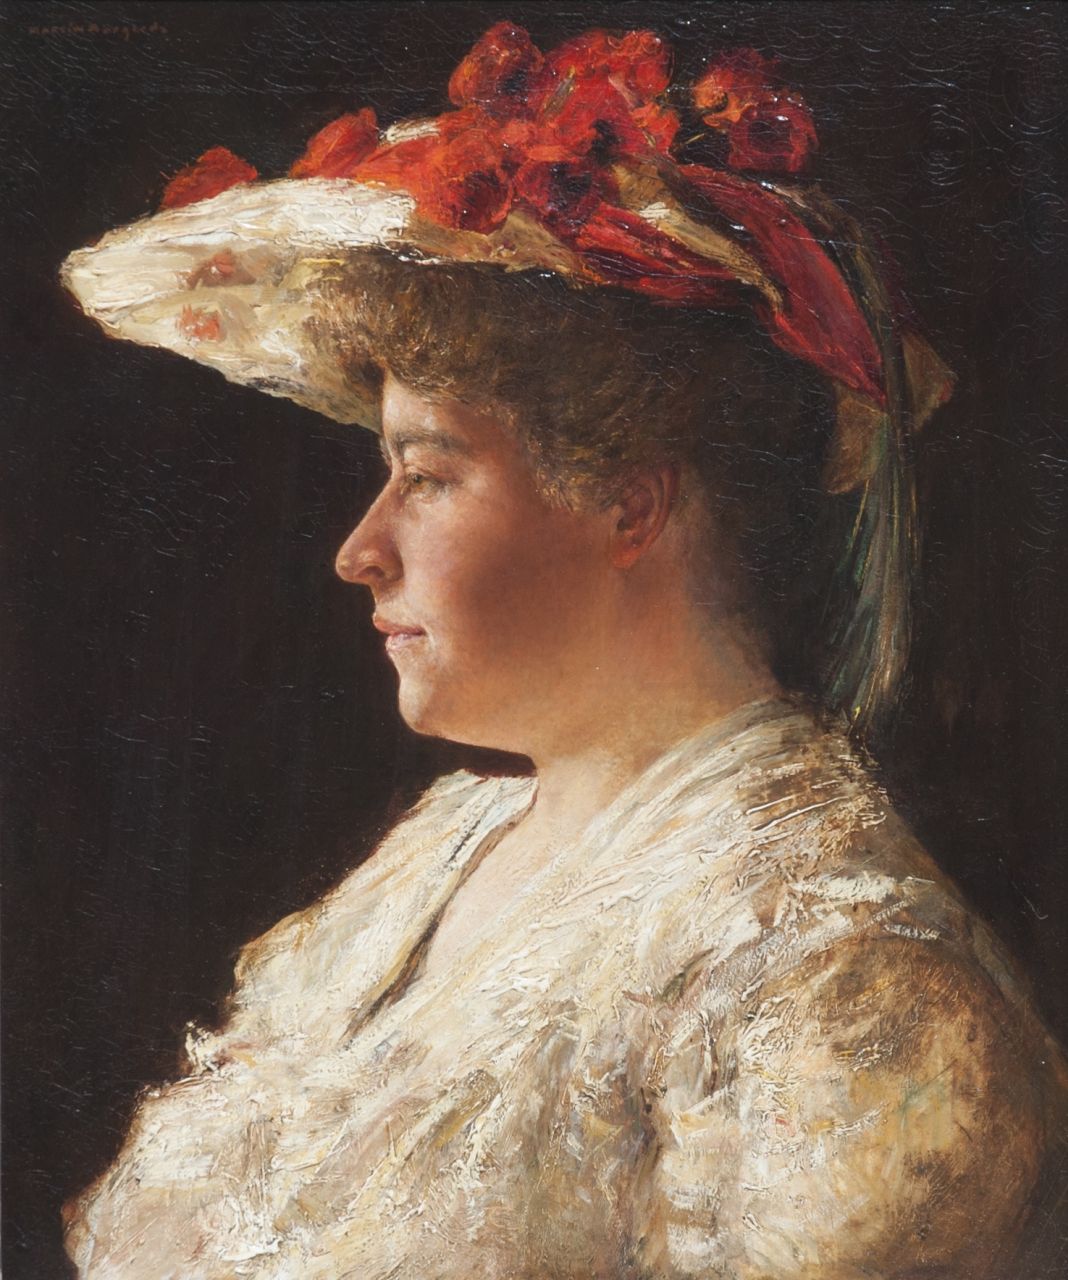 Martin Borgord | A portrait of Mrs. A. Singer-Brugh, Öl auf Leinwand, 55,2 x 46,0 cm, signed u.l.